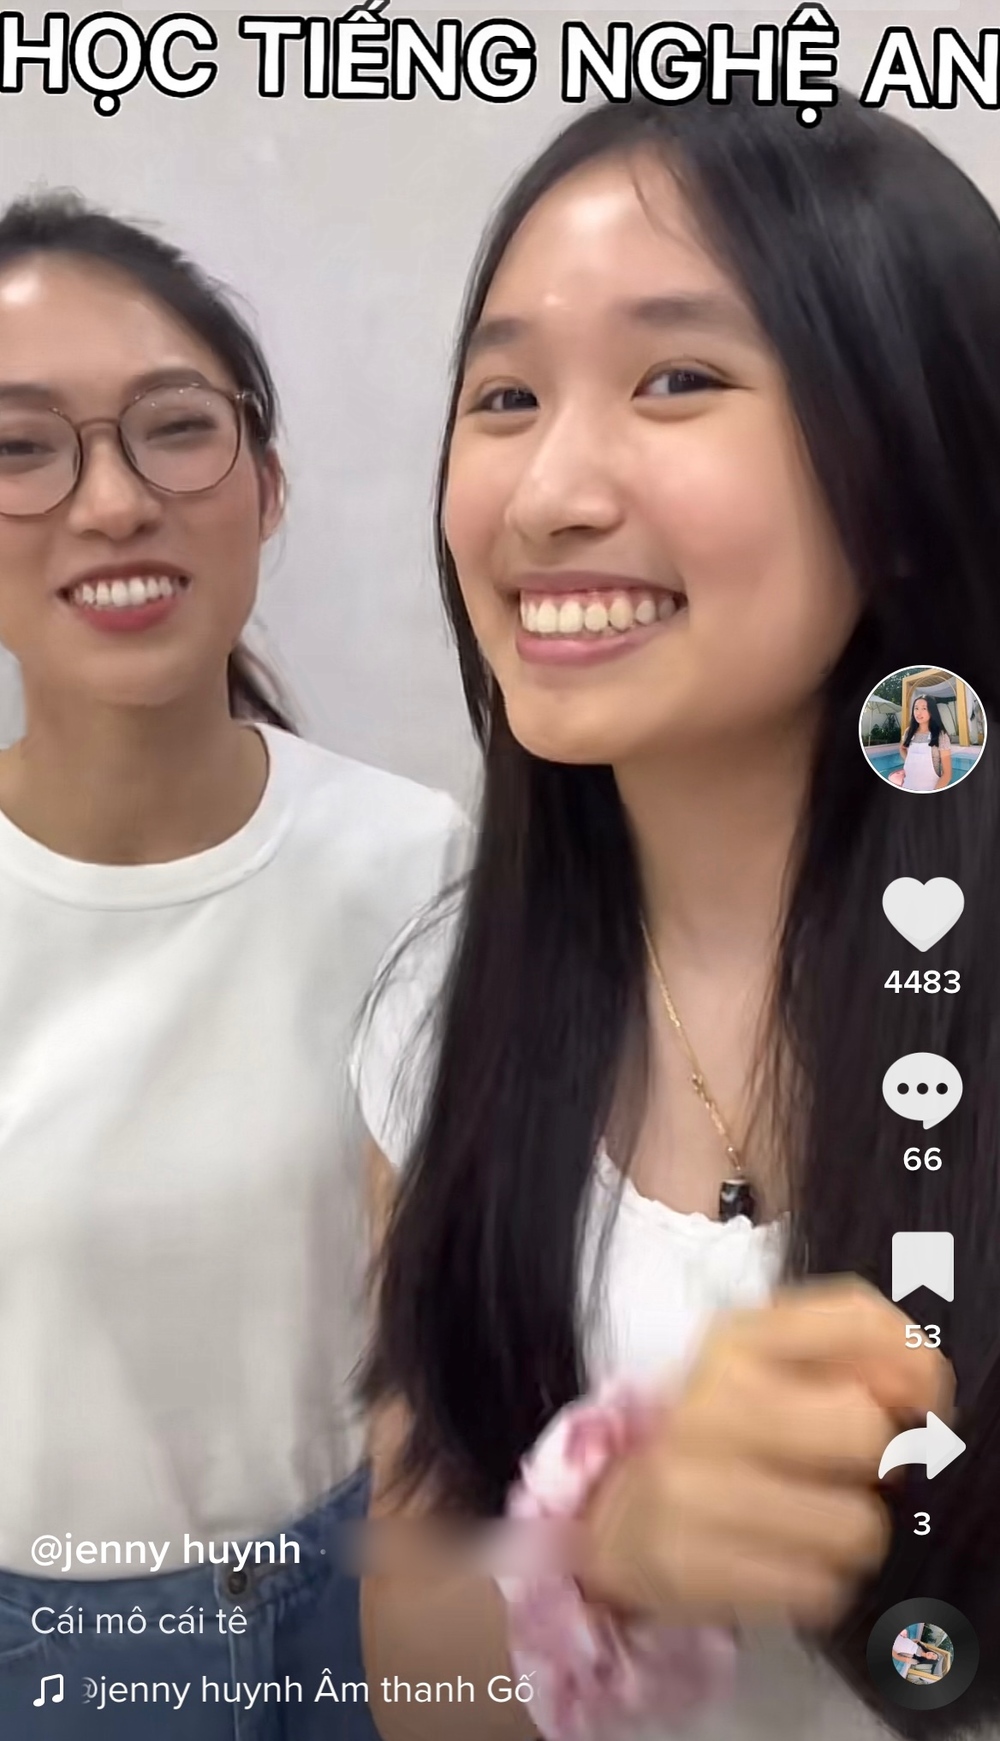  
Nữ YouTuber cũng hào hứng chia sẻ khoảnh khắc cùng Khánh Vy học tiếng Nghệ An. (Ảnh: Chụp màn hình TikTok jenny huynh)